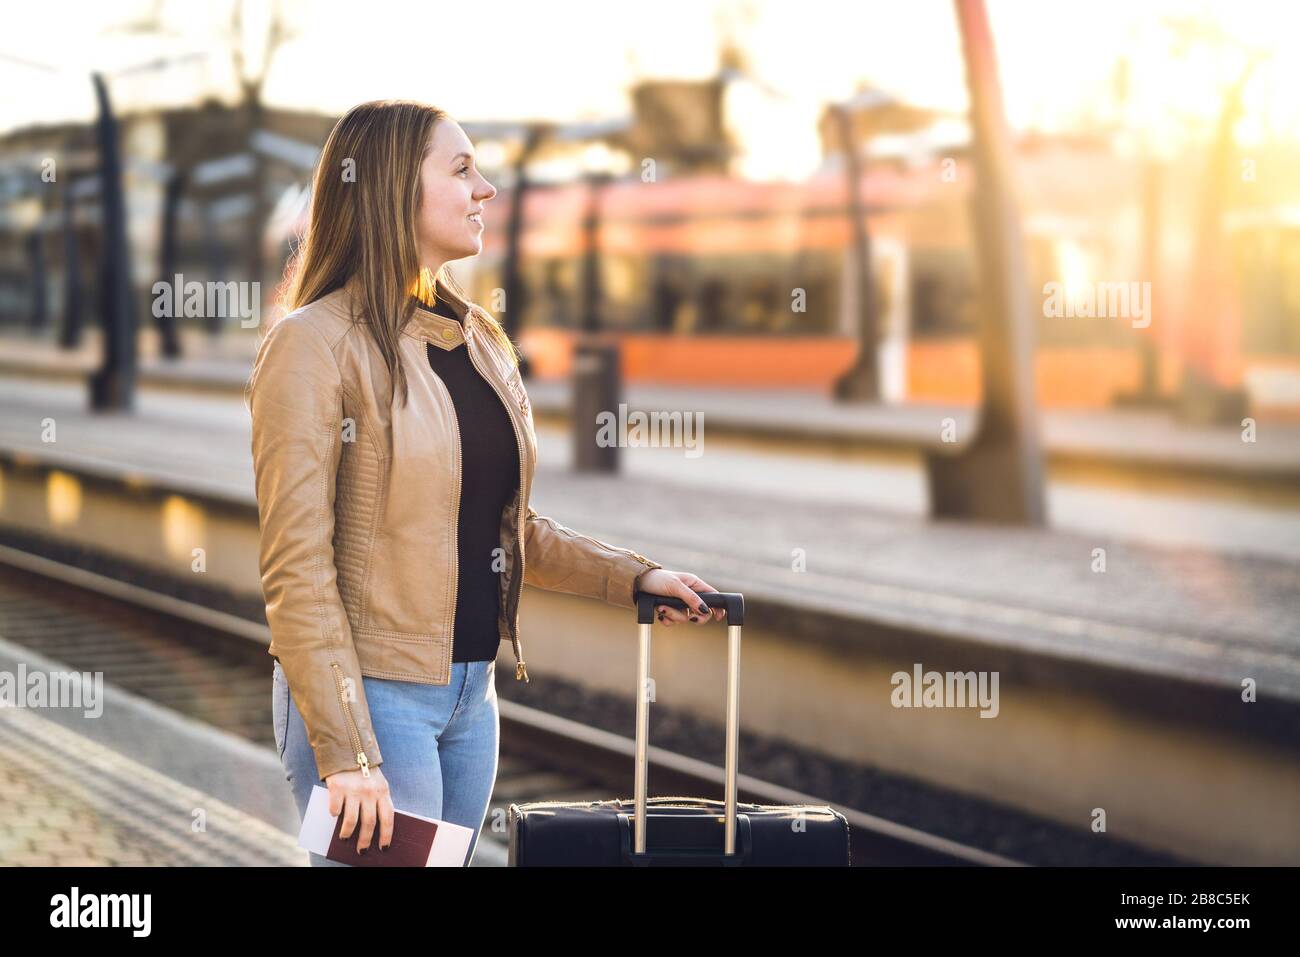 Lächelnde Frau mit Gepäck im Bahnhof. Fröhliche Dame, die mit Koffer, Pass und Ticket am Bahnsteig steht. Eisenbahn-Reise- und Lifestyle-Konzept. Stockfoto